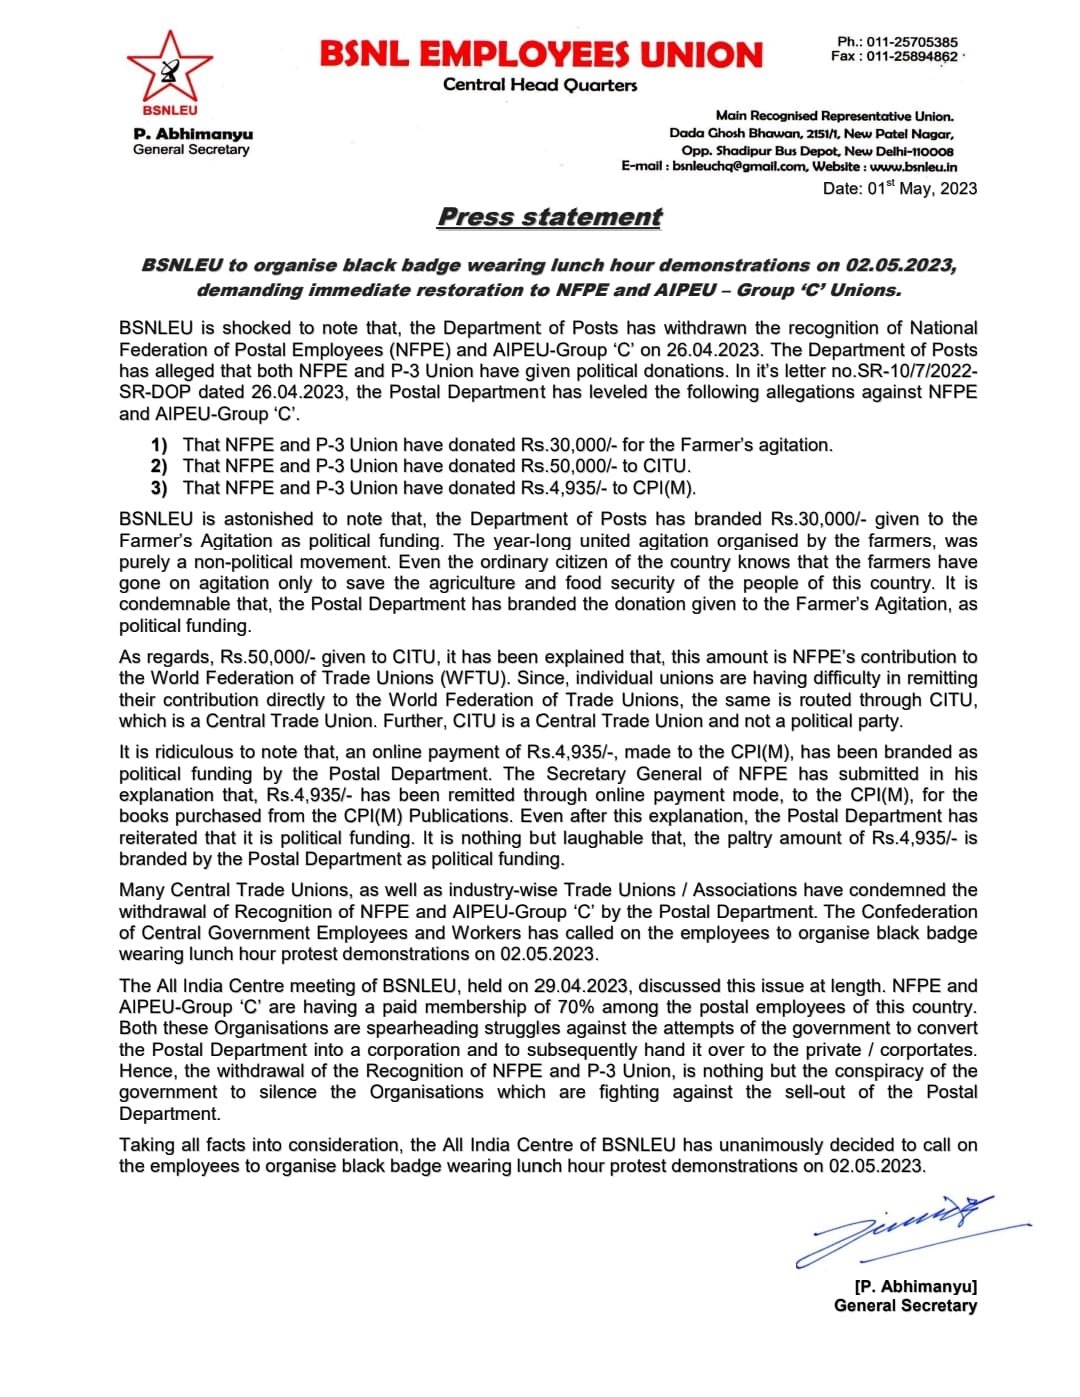 *NFPE आणि P3 युनियनची मान्यता मागे घेणे - BSNLEU च्या अखिल भारतीय केंद्राने 02-05-2023 रोजी लंच अवर निषेध निदर्शने काळे बिल्ला लावून आयोजन करण्याचे आवाहन केले आहे.* Image 